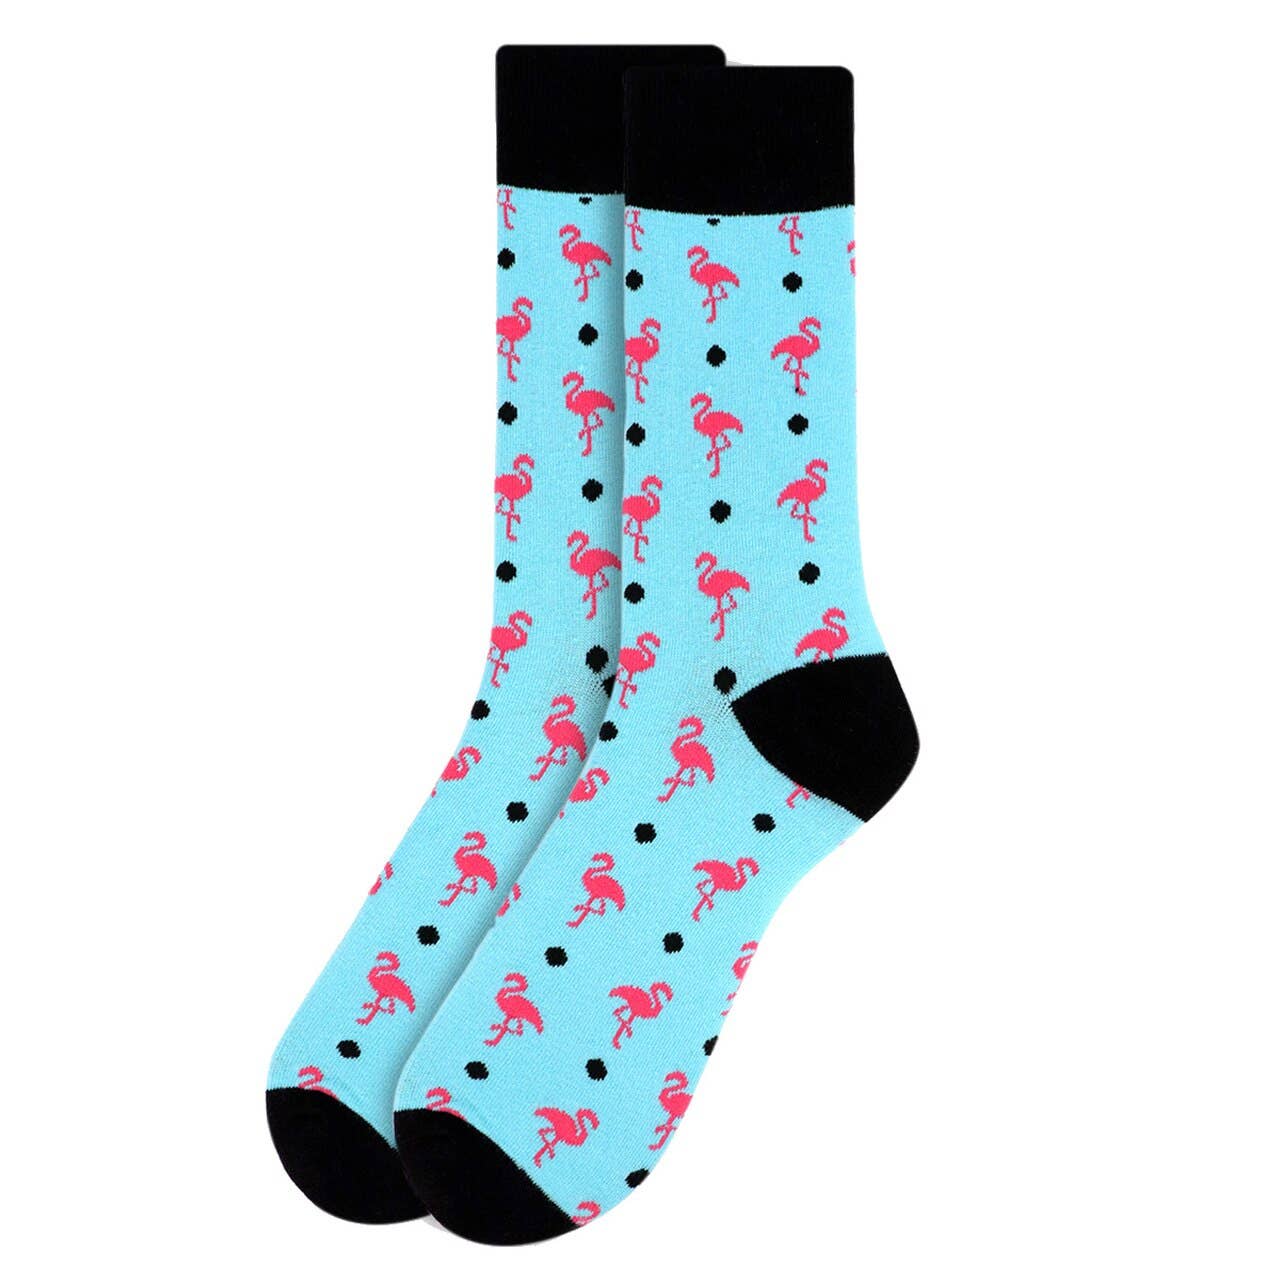 Flamingo Novelty Socks for Men